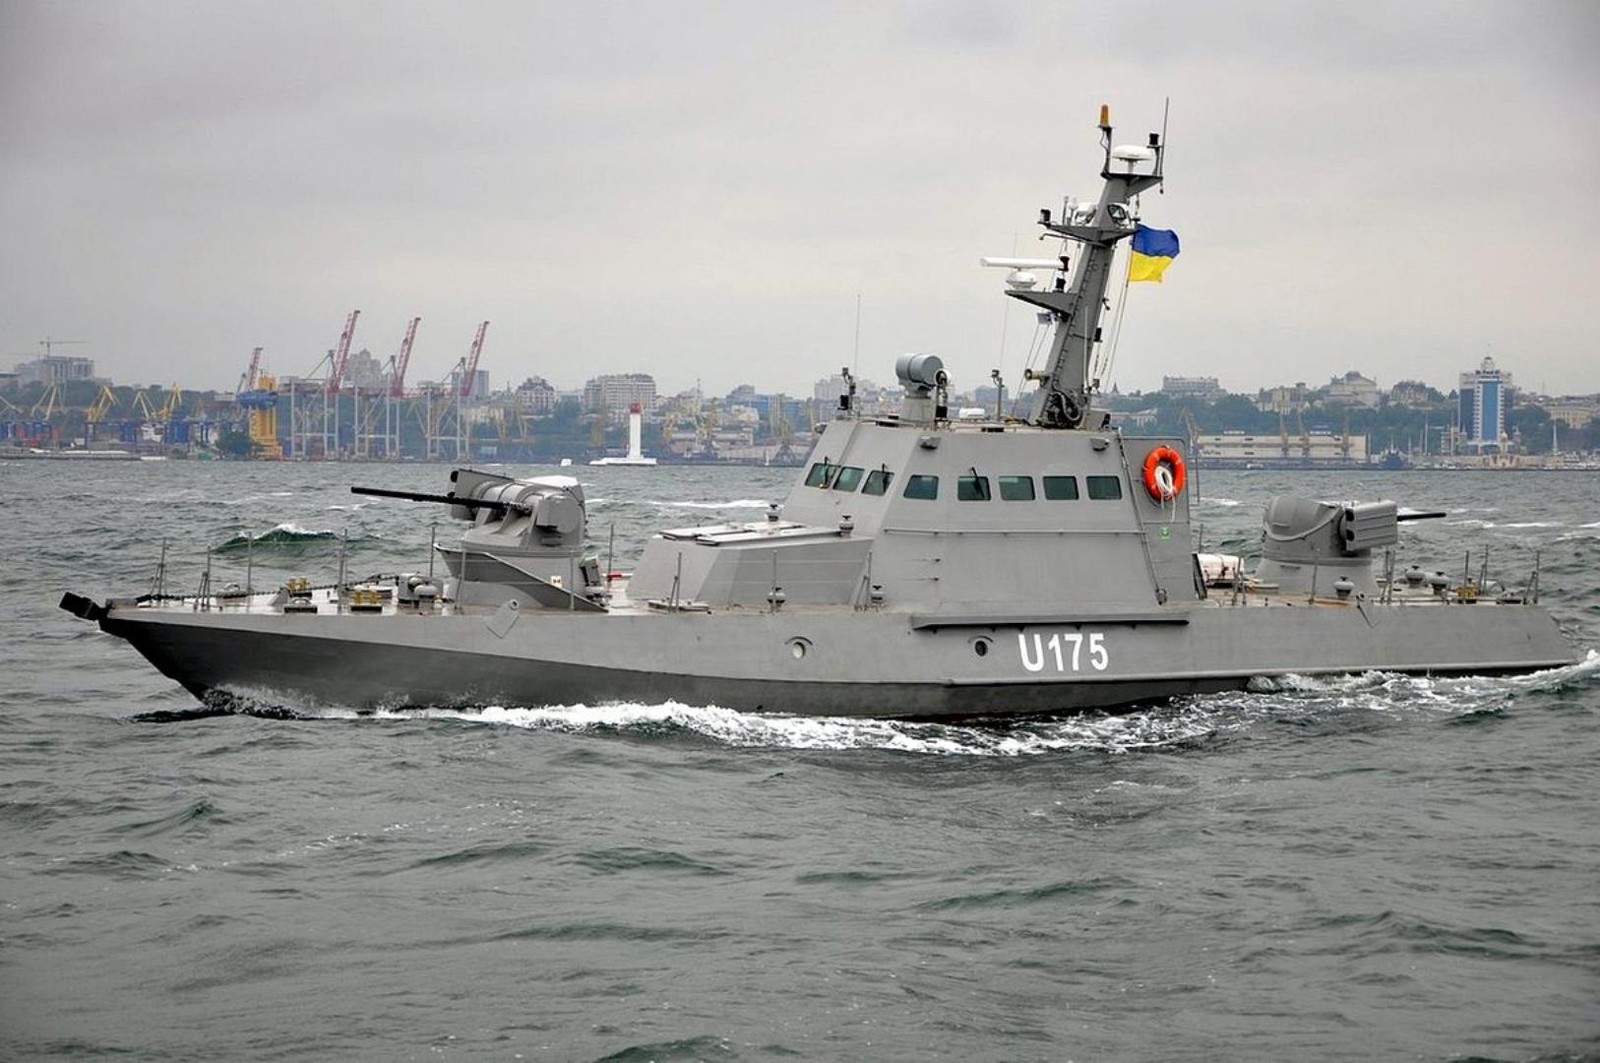 Ukraina wzmocniła swoją flotę. Marynarka wojenna kraju doczekała się nowego nabytku